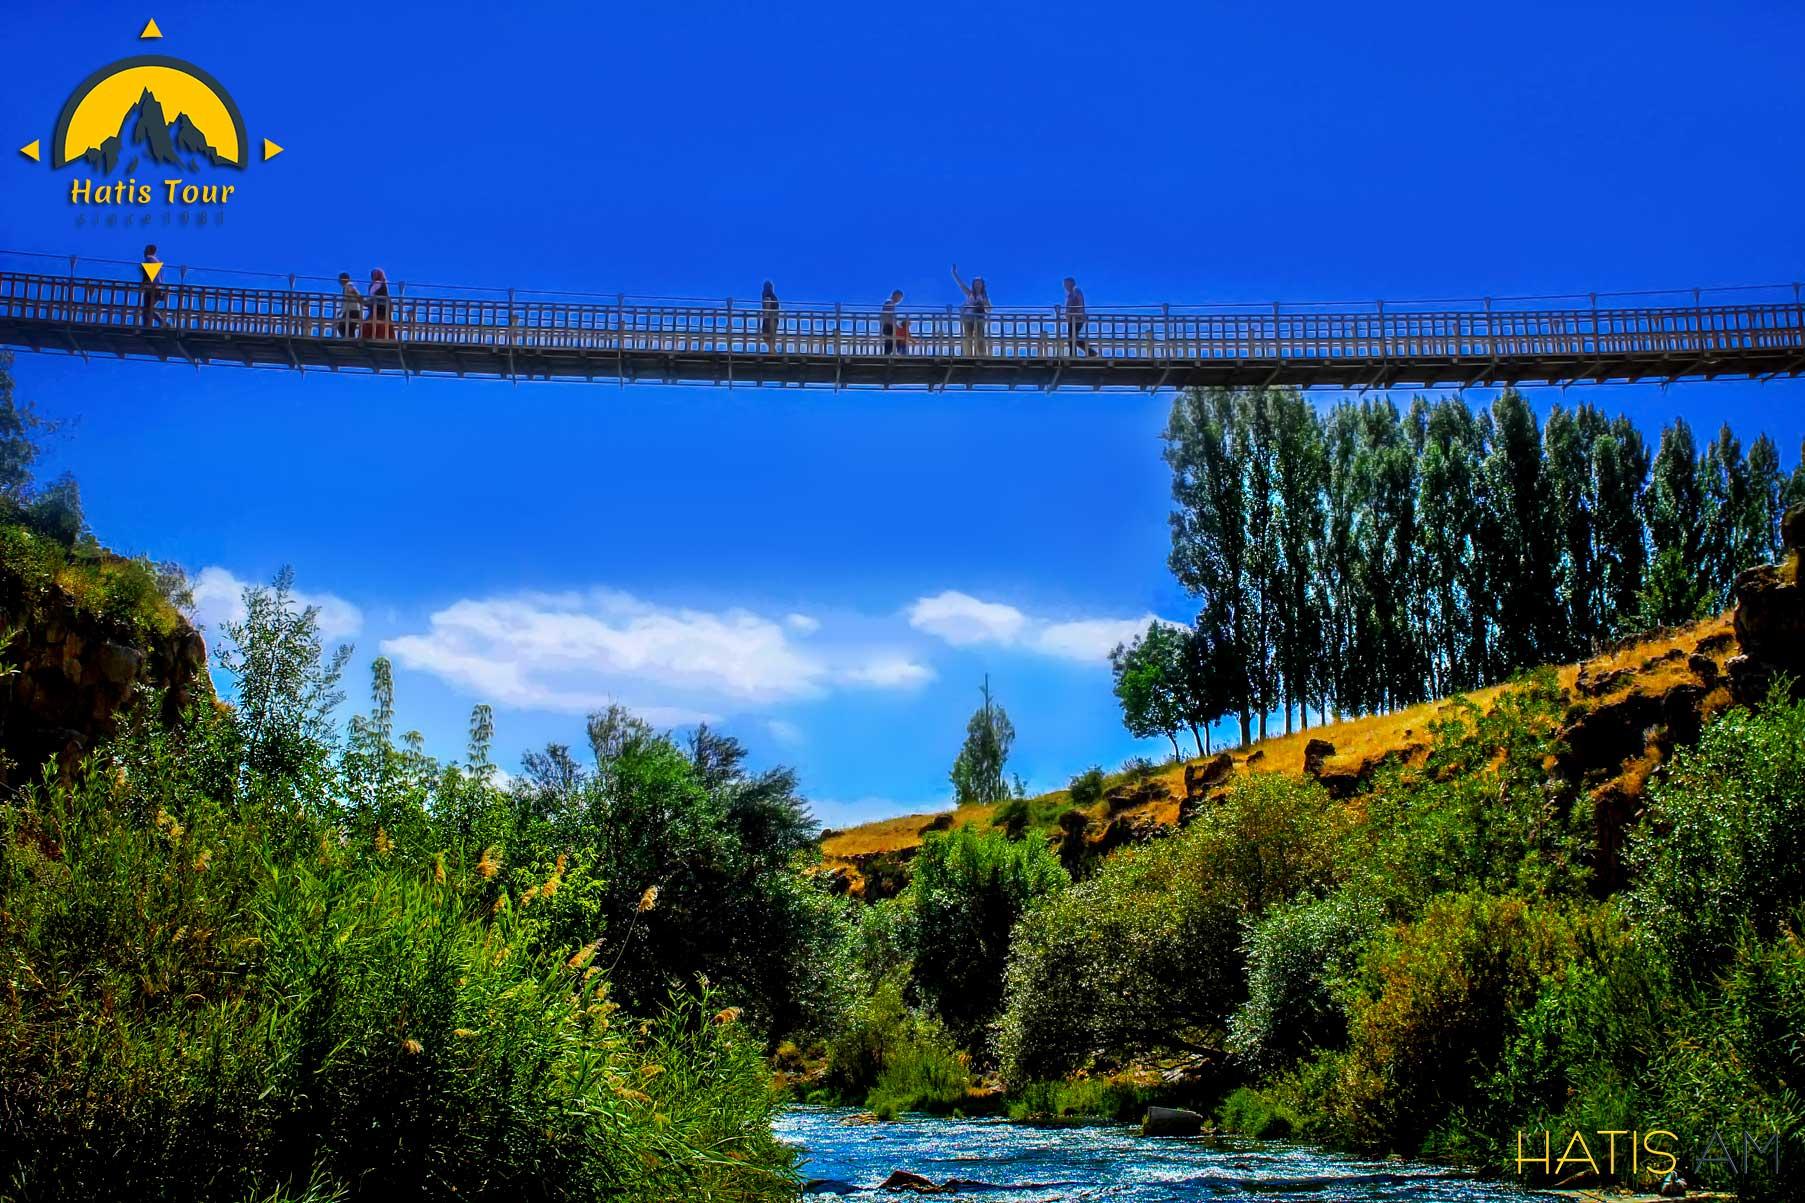 Կախվող կամուրջը Բերկրի գետի վրա, ջրվեժի հարևանությ